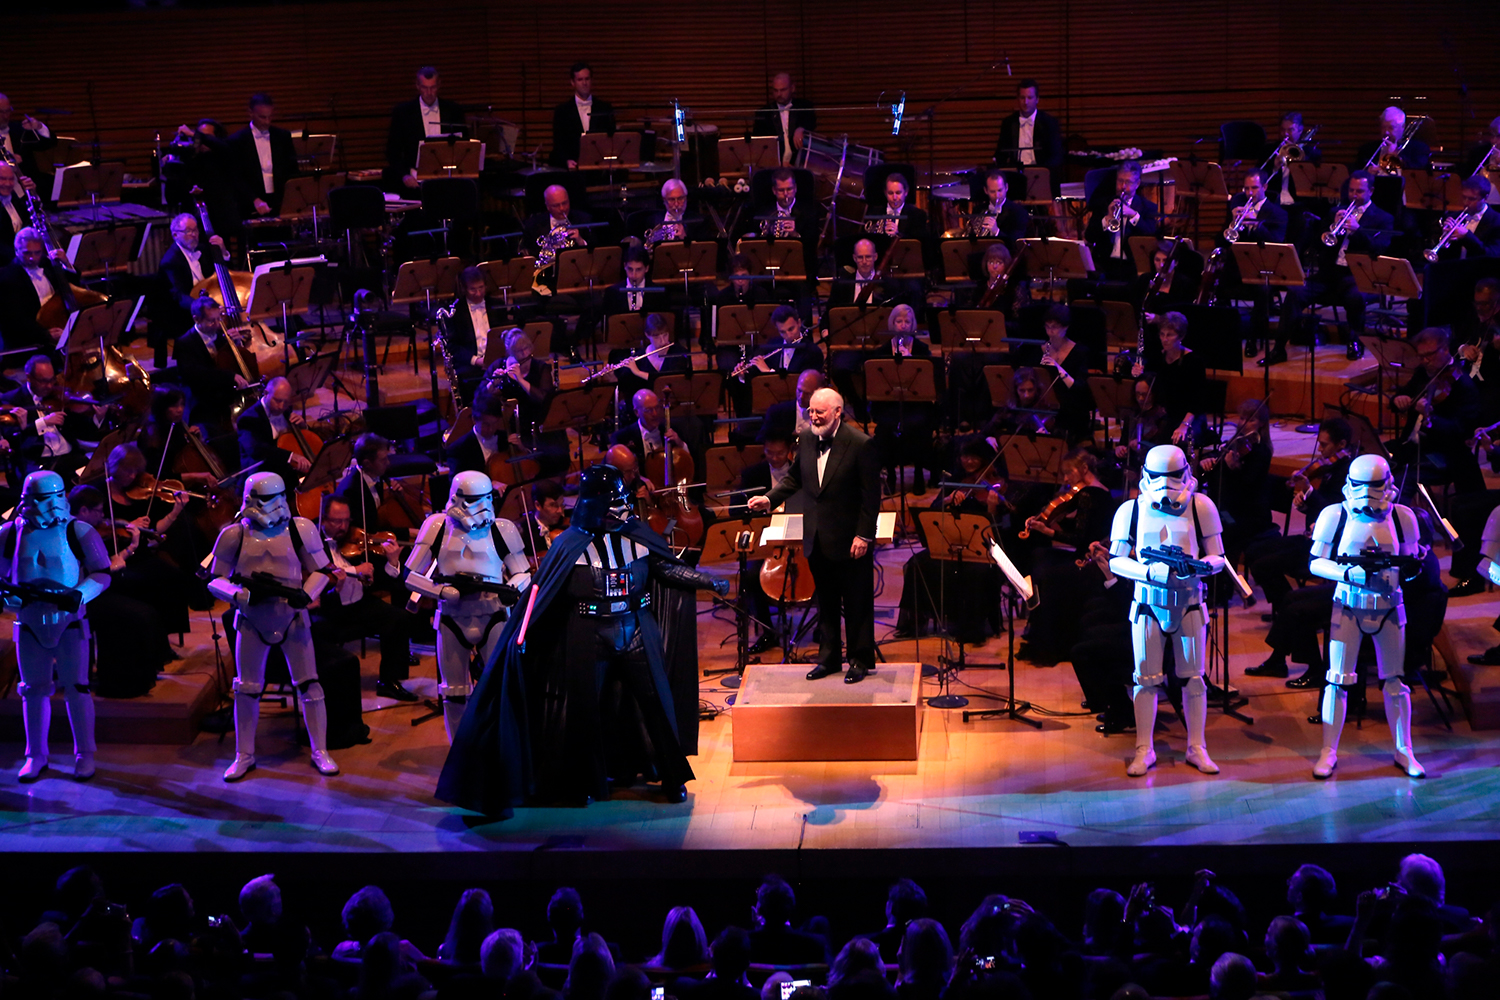 Джон Уильямс на поклонах после исполнения сюиты «Звездные войны». Концертный зал Уолта Диснея в филармонии Лос-Анджелеса.